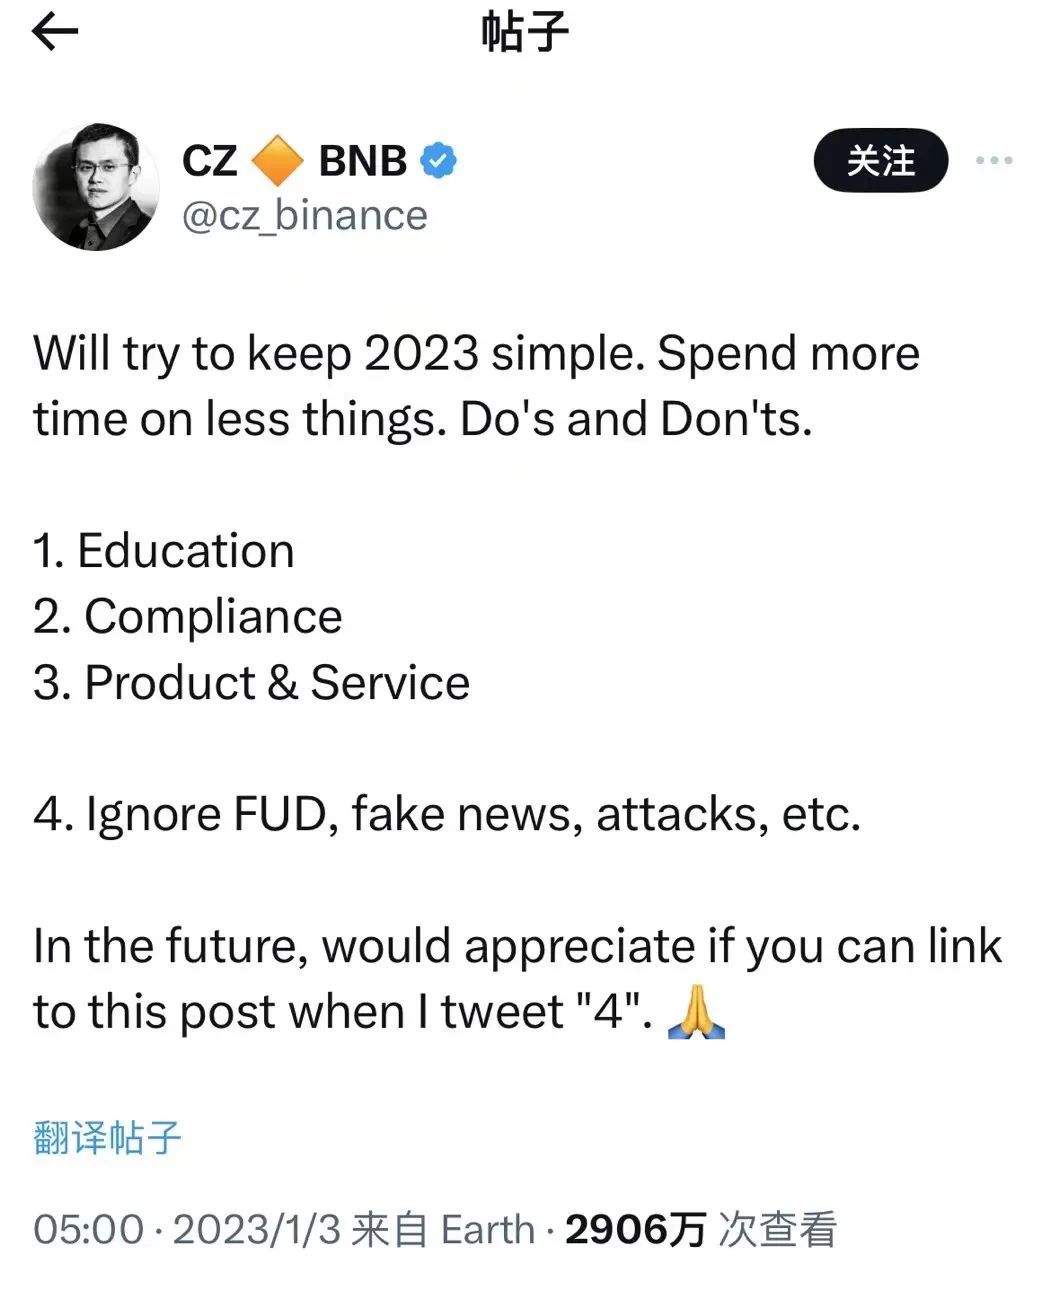 ·赵长鹏在社交媒体晒出2023年计划，第二条便是合规性。